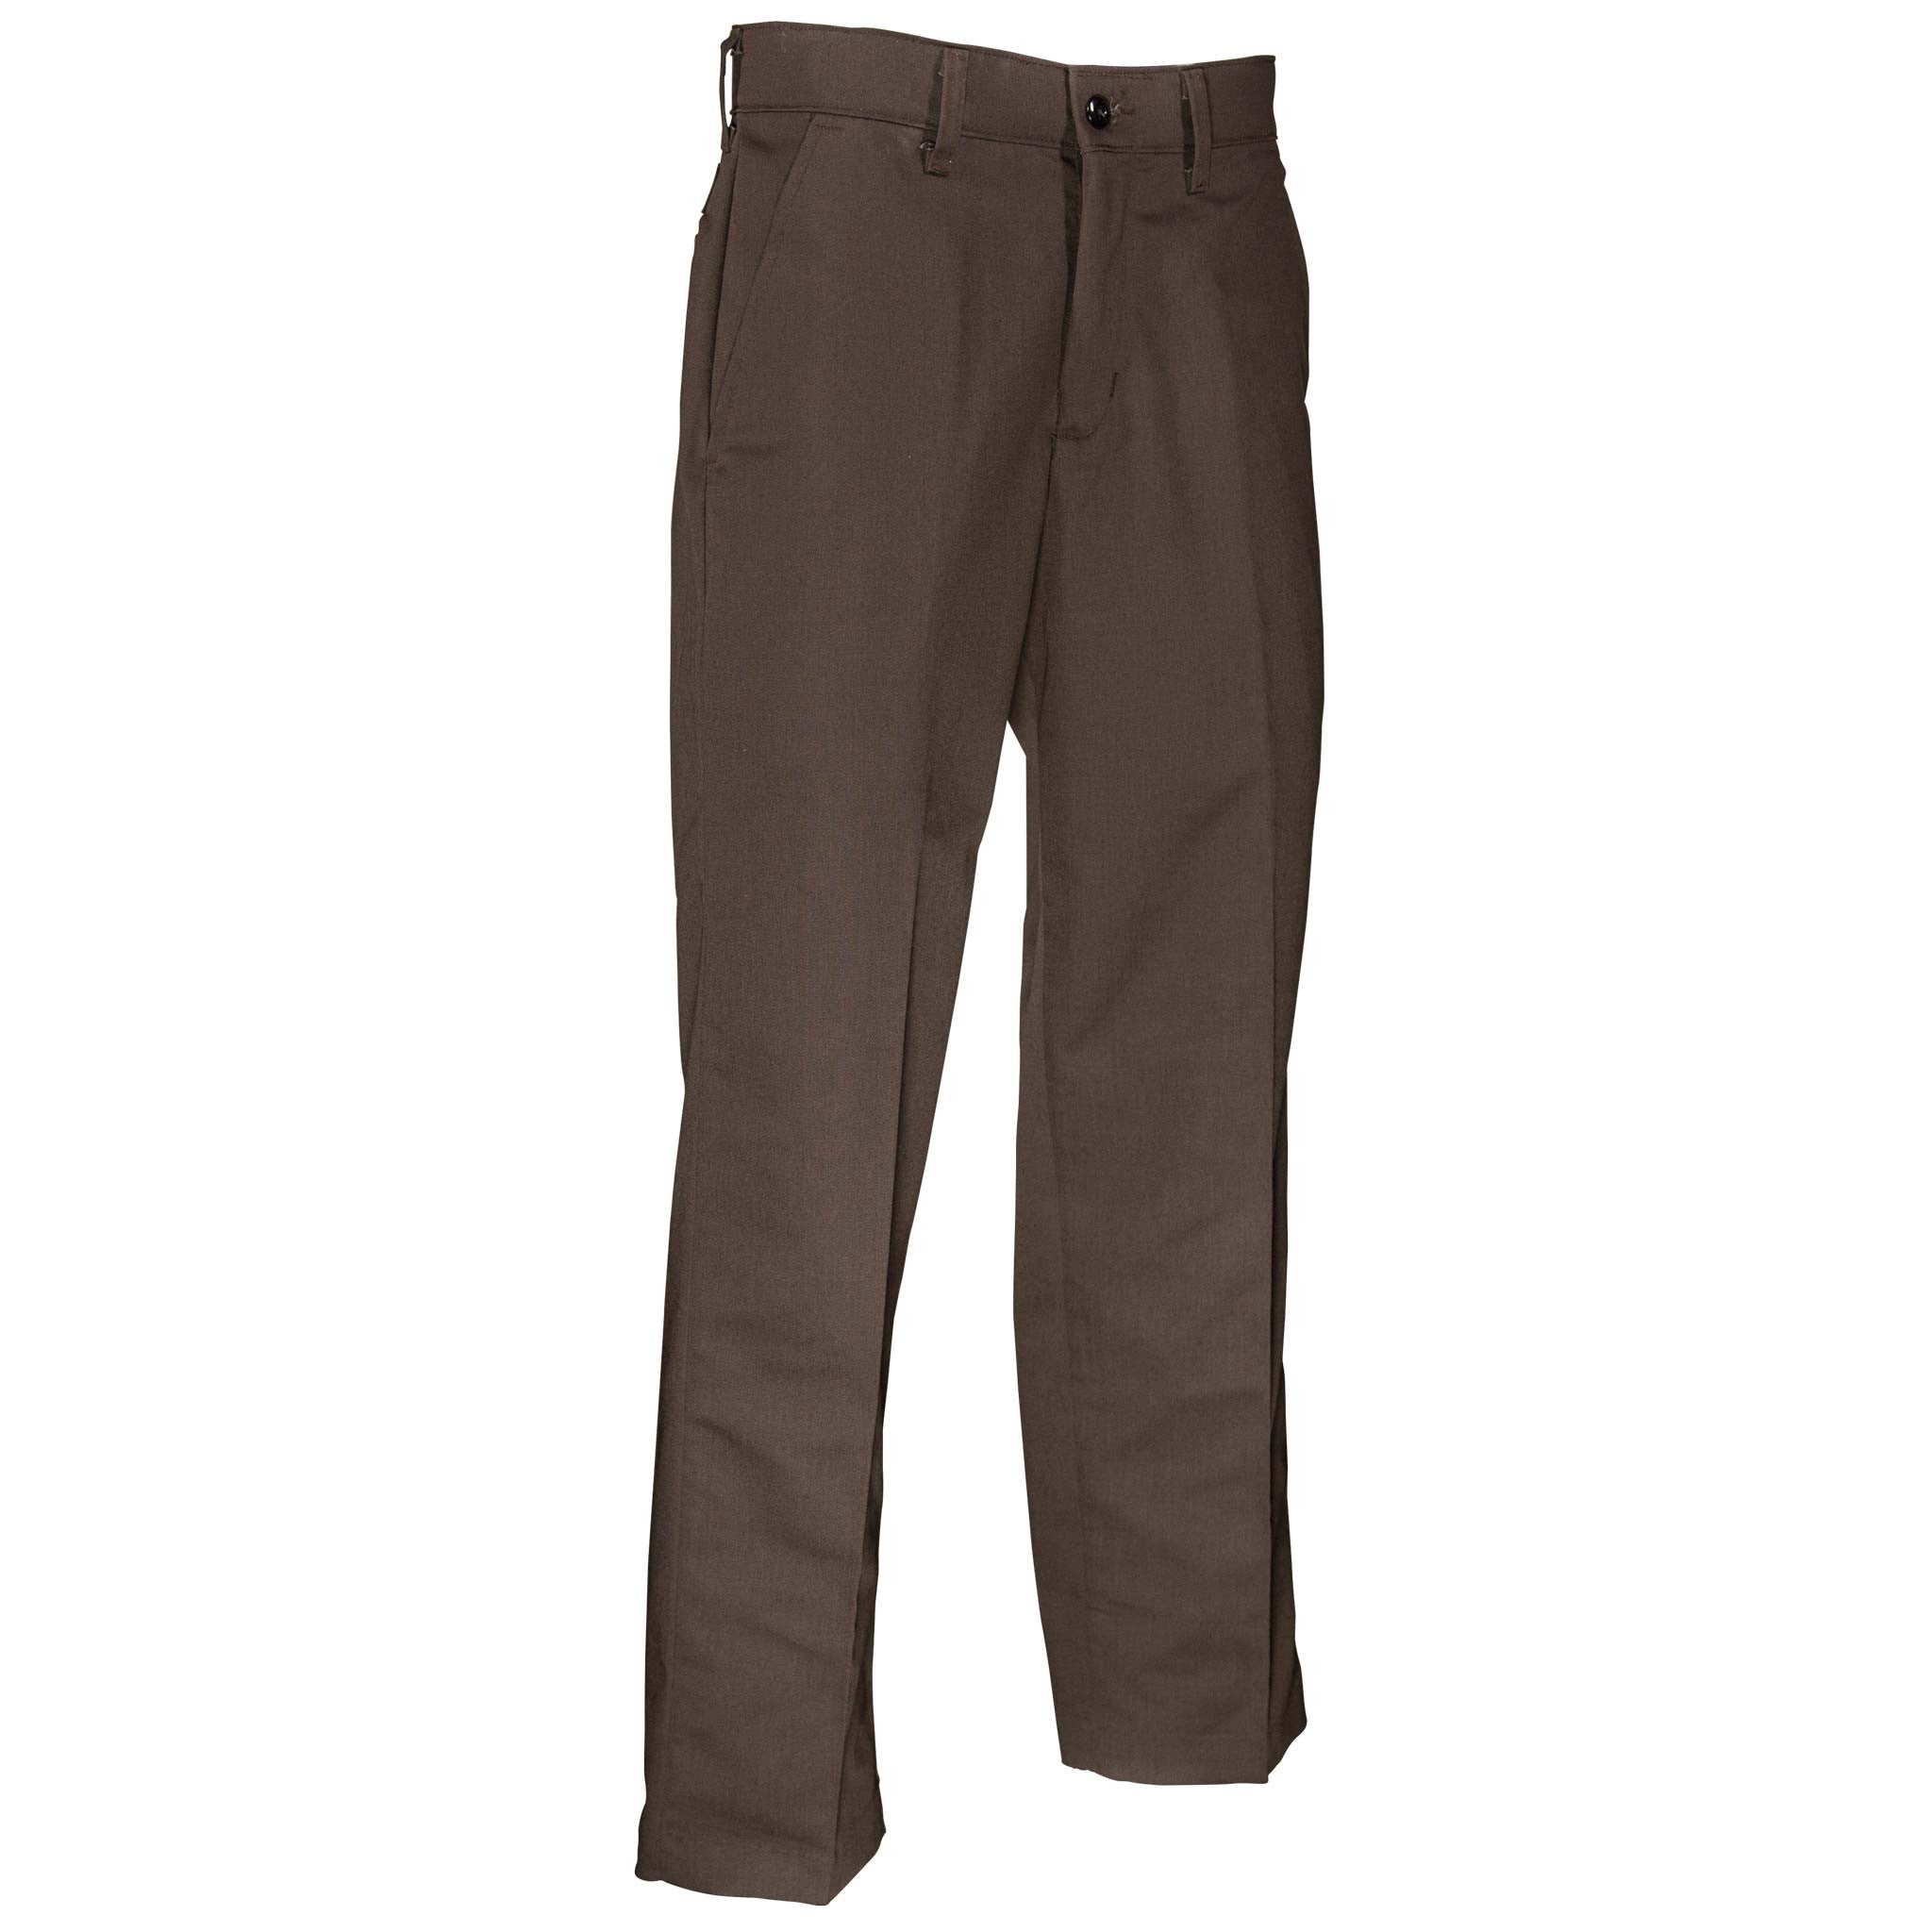 Original BEN Davis Pants Black- Nave- Charcoal- L. Gray- Khaki- Brown All  Sizes